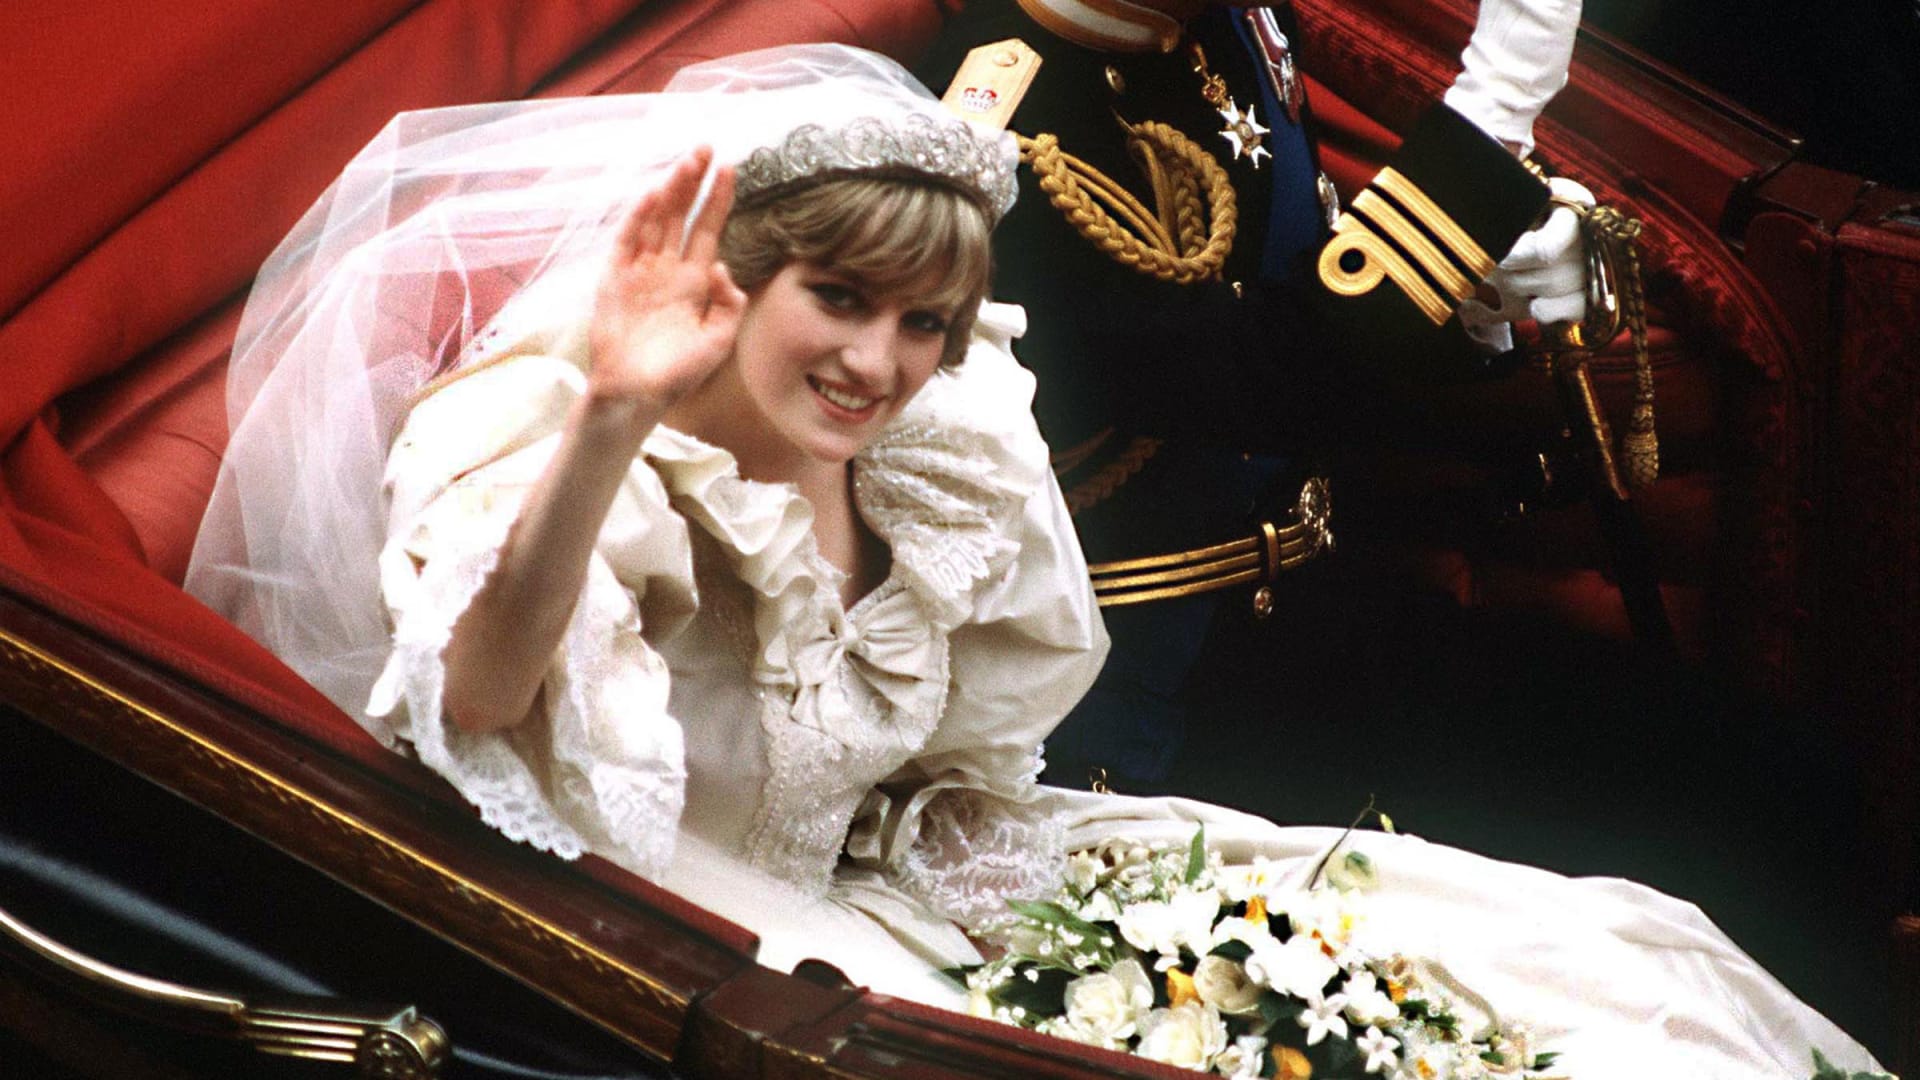 لا يقدر بثمن..عرض تاج زفاف الأميرة ديانا لأول مرة منذ عقود